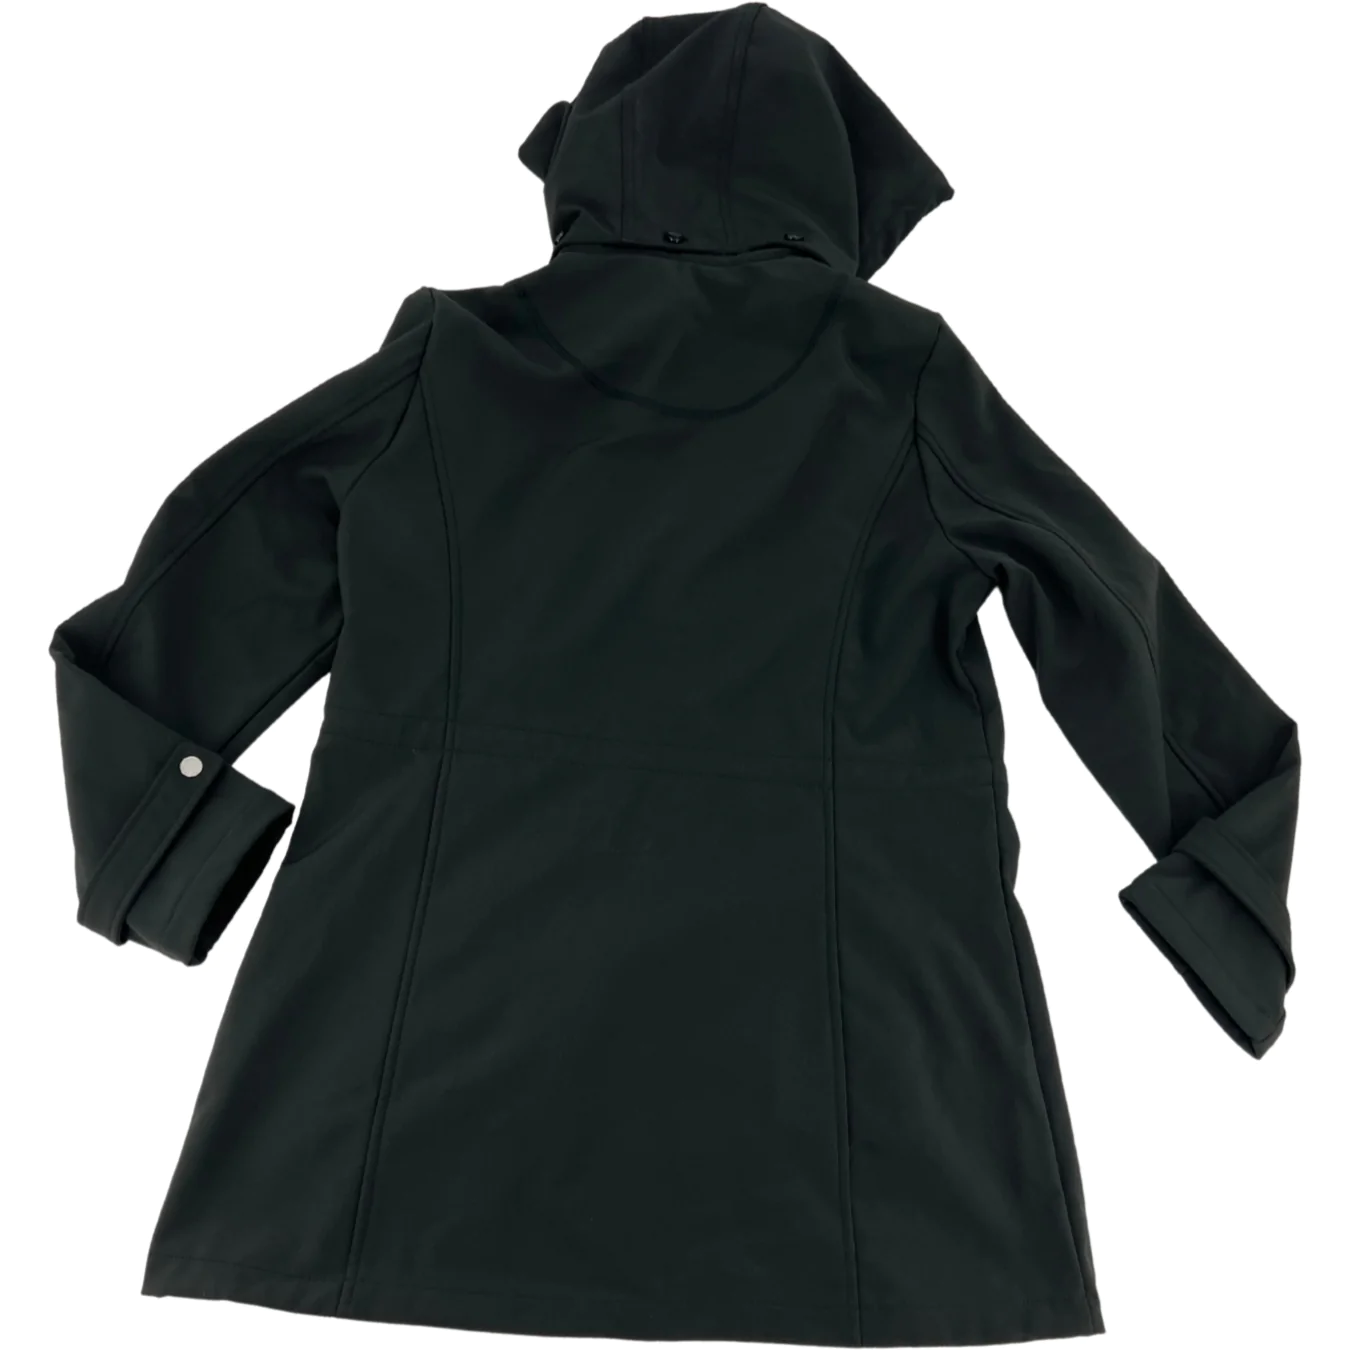 Nautica Women’s Black Performance Jacket / Size Large